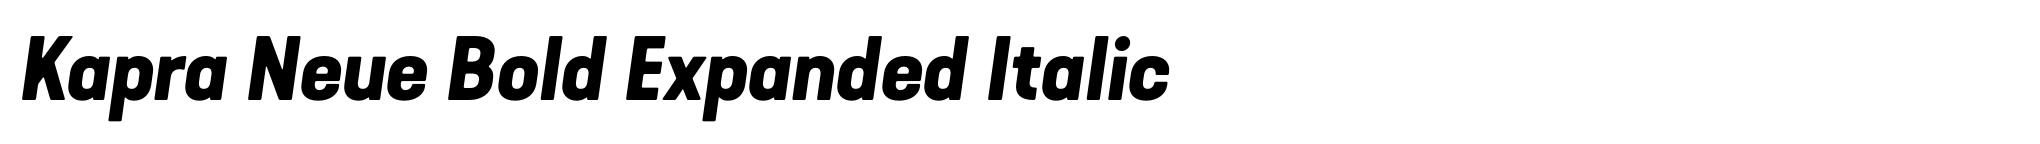 Kapra Neue Bold Expanded Italic image